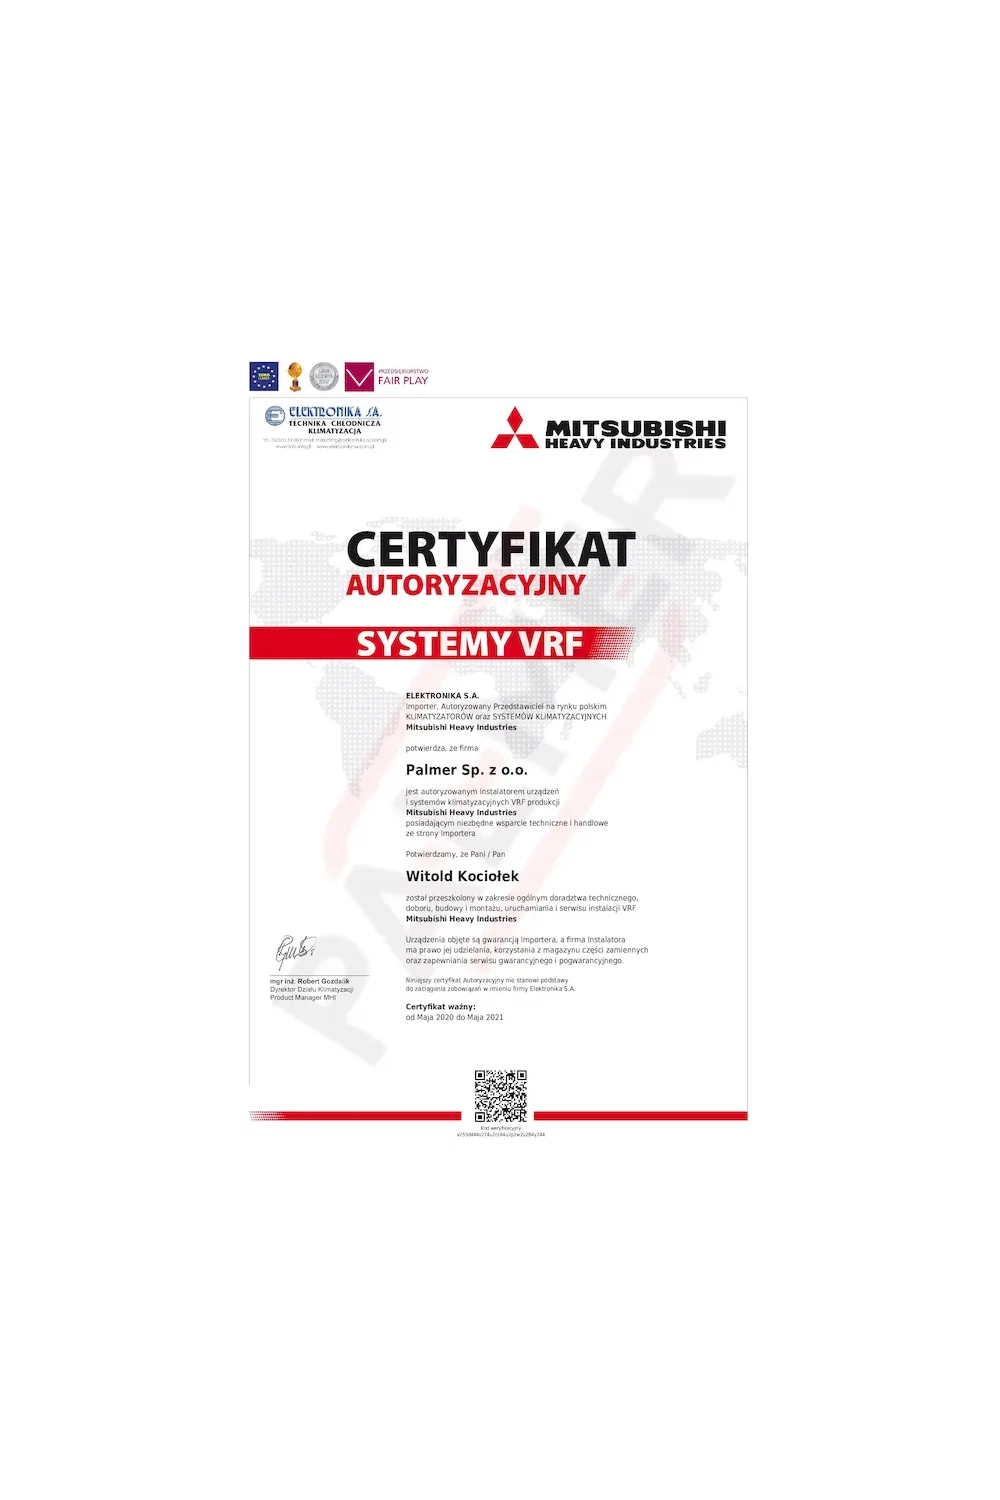 Certyfikat Autoryzacyjny Mitsubishi - zdjęcie